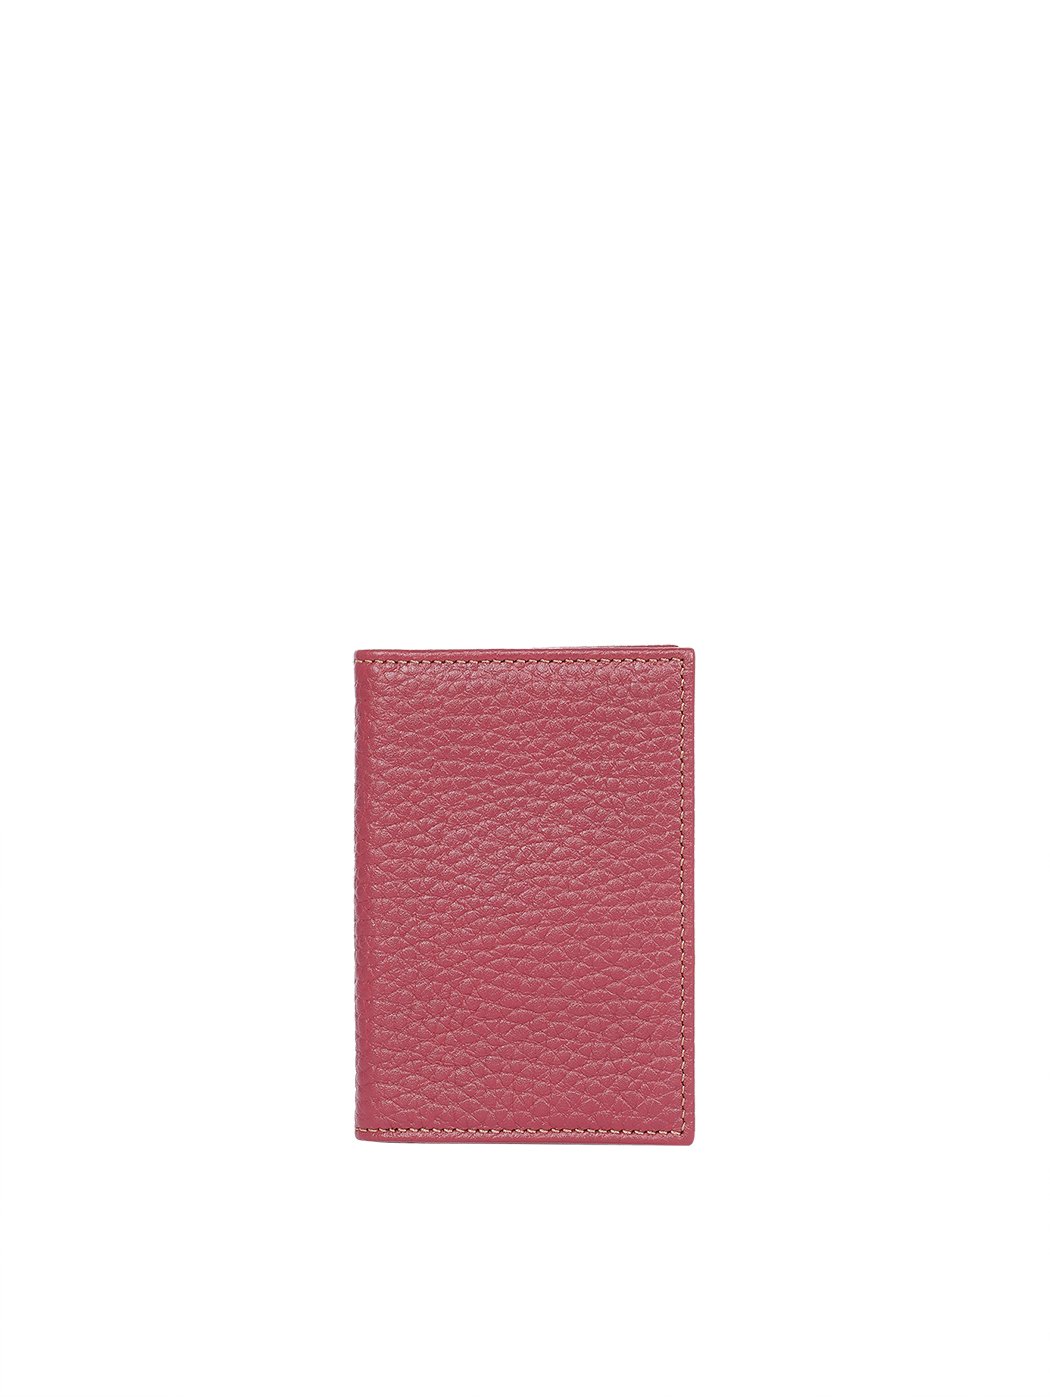 3 Pocket Leather Card Holder Bordeaux